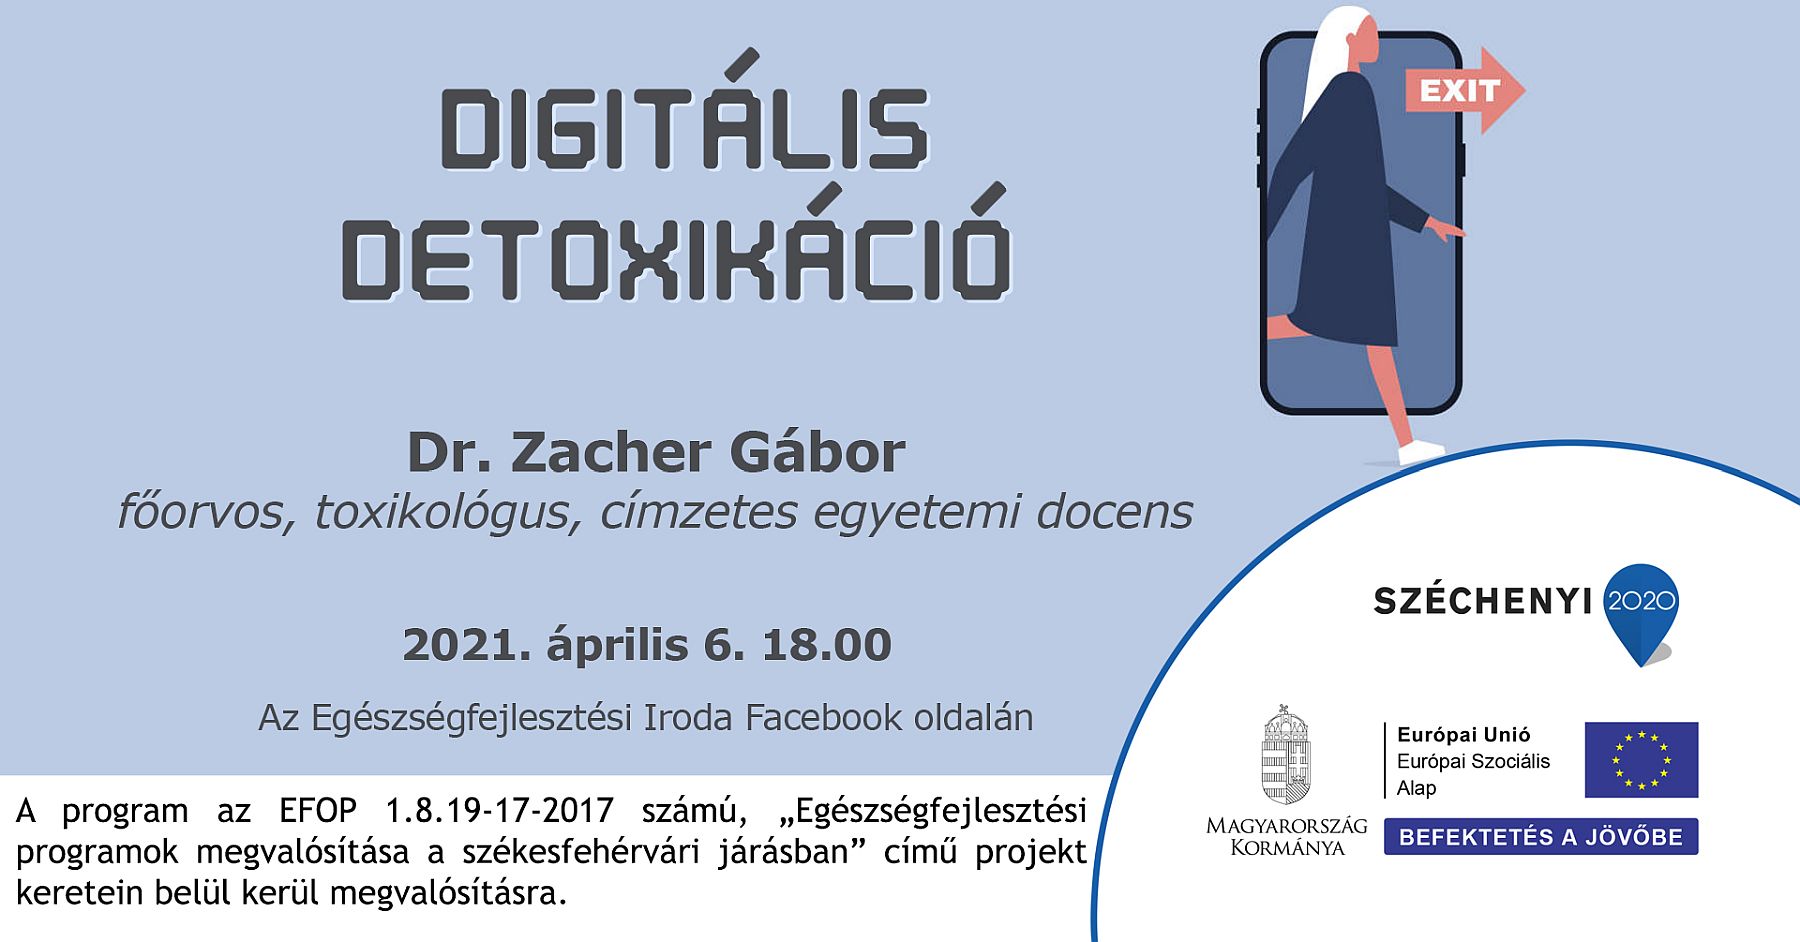 Digitális detoxikáció: az Egészségfejlesztési Iroda vendége Dr. Zacher Gábor lesz kedden